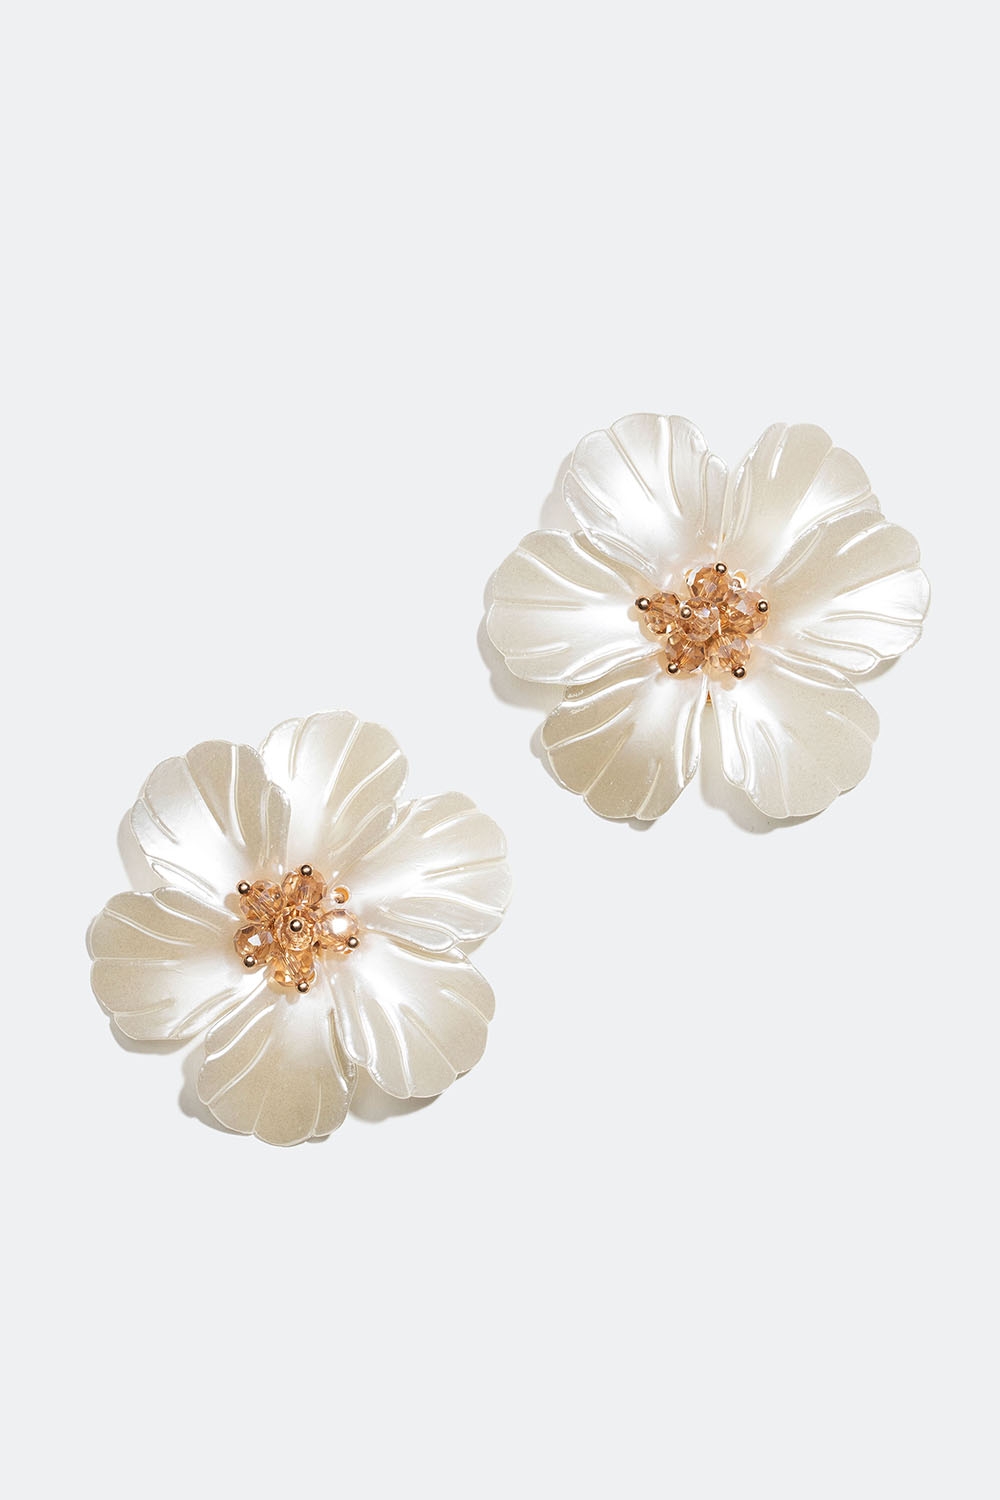 Korvakorut, joissa suuria valkeita kukkia ryhmässä Korut / Korvakorut @ Glitter (253006153002)